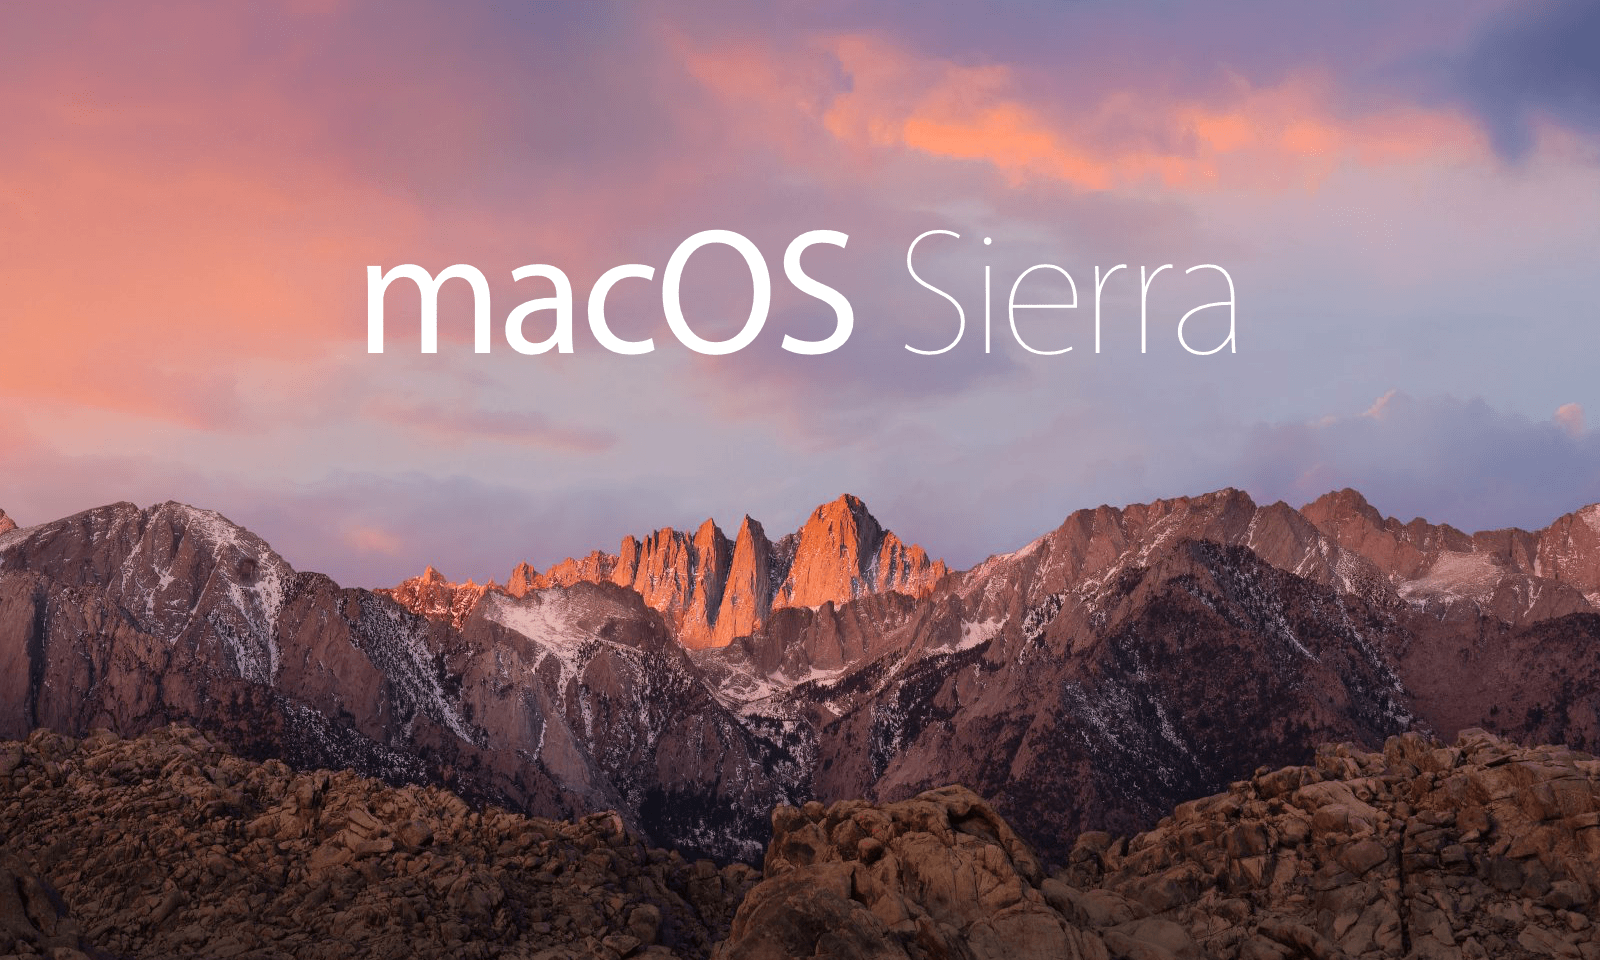 mozilla firefox for mac macos sierra 10.12.3